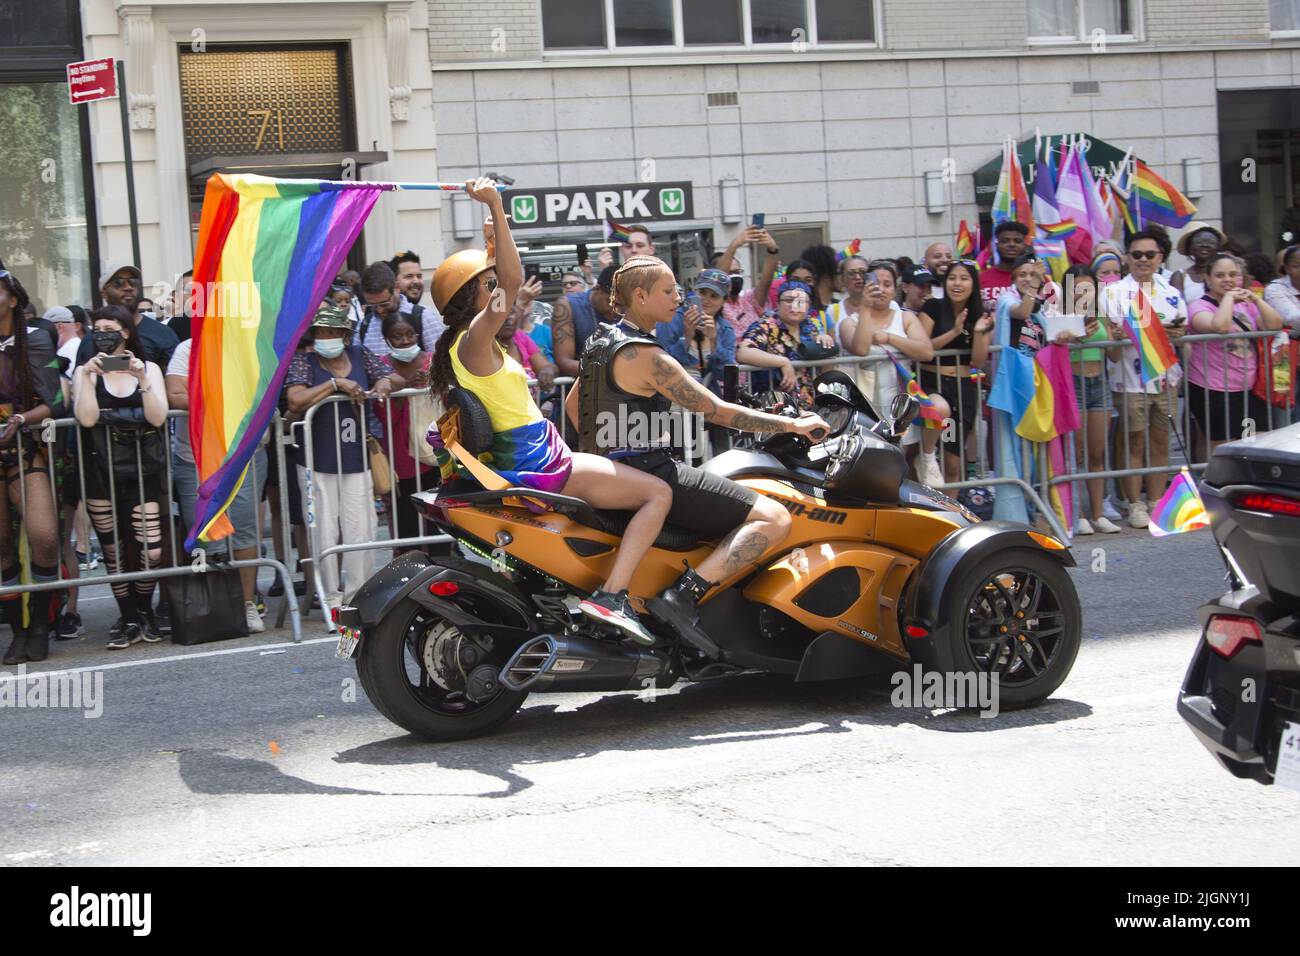 Le défilé annuel gay Pride revient en mars sur 5th Avenue et se termine sur Christopher Street dans Greenwich Village après une pause de 3 ans en raison de la pandémie Covid-19. Le club de motos pour femmes se promette dans la parade. Banque D'Images